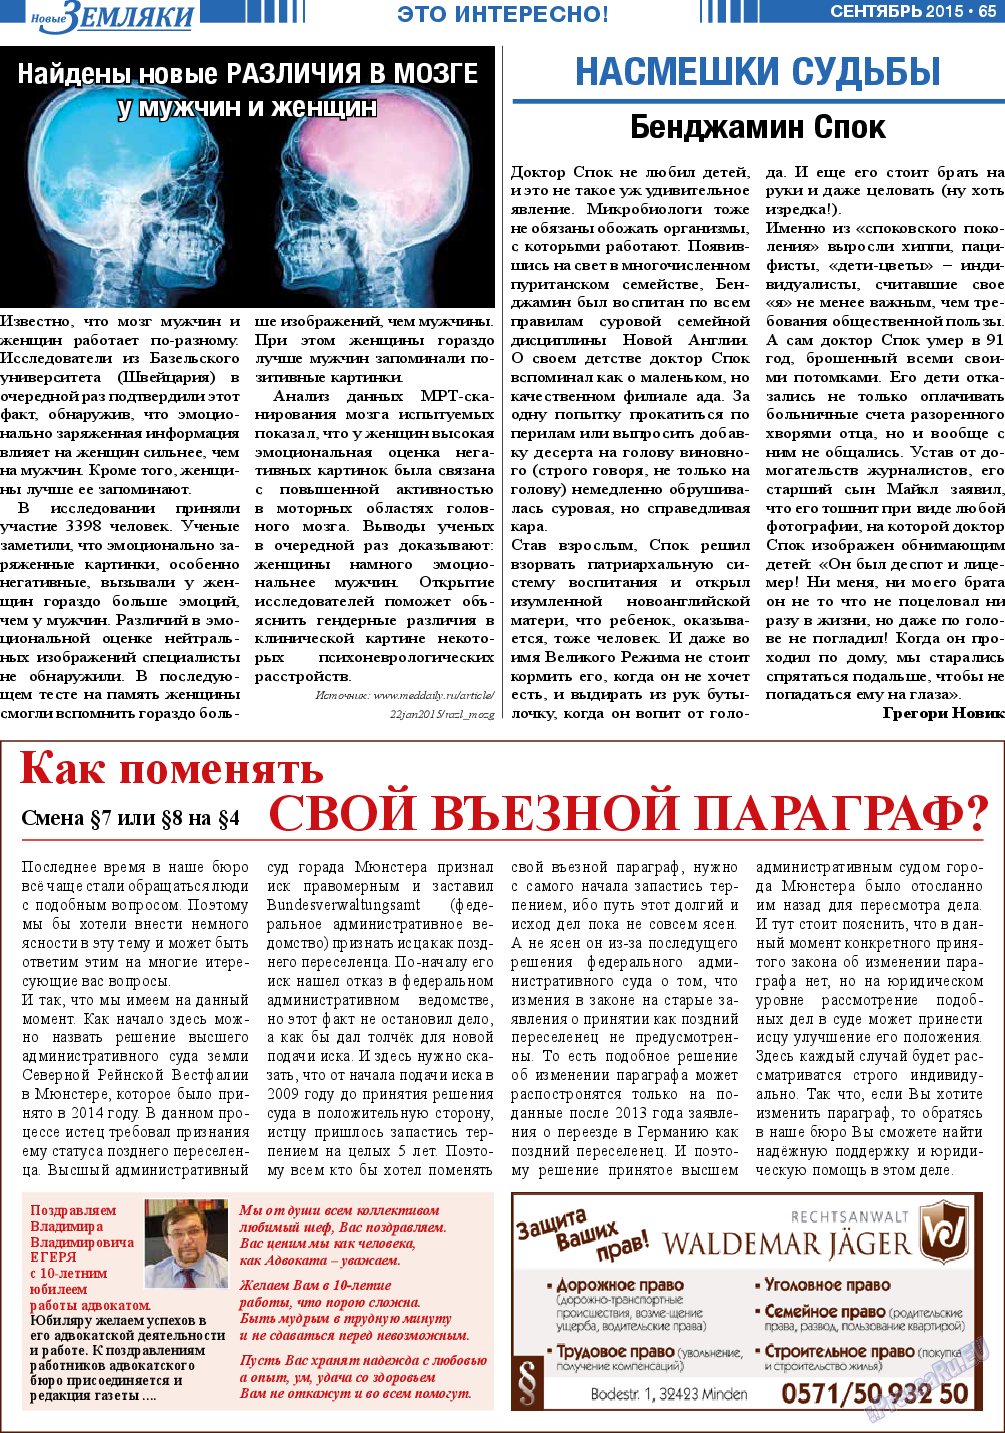 Новые Земляки, газета. 2015 №9 стр.65